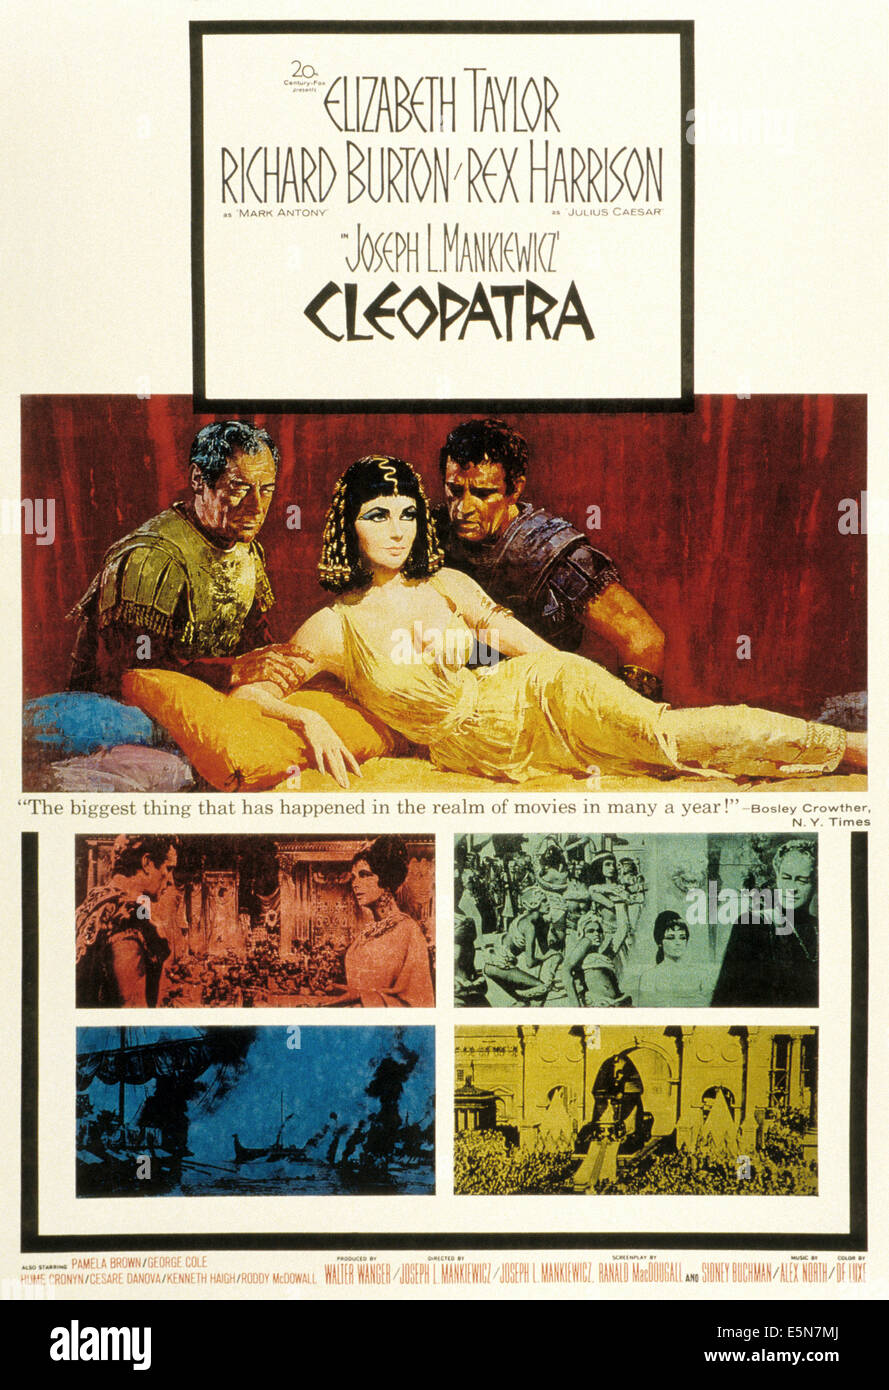 CLEOPATRA, Elizabeth Taylor, 1963, TM und Copyright (c) 20. Century Fox Film Corp.  Alle Rechte vorbehalten Stockfoto